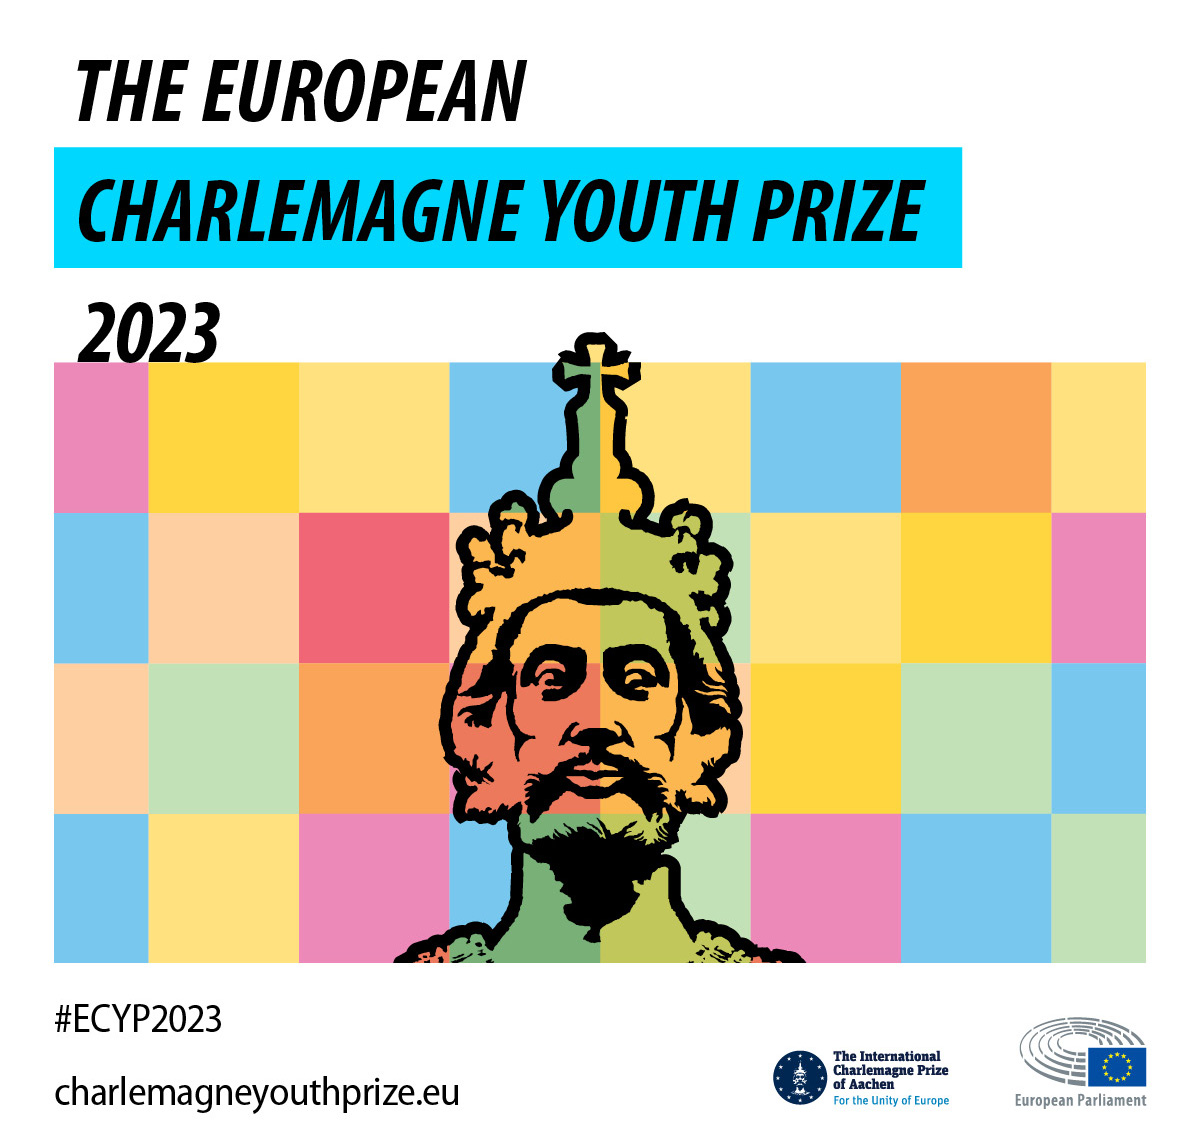 Prix Charlemagne pour la jeunesse européenne